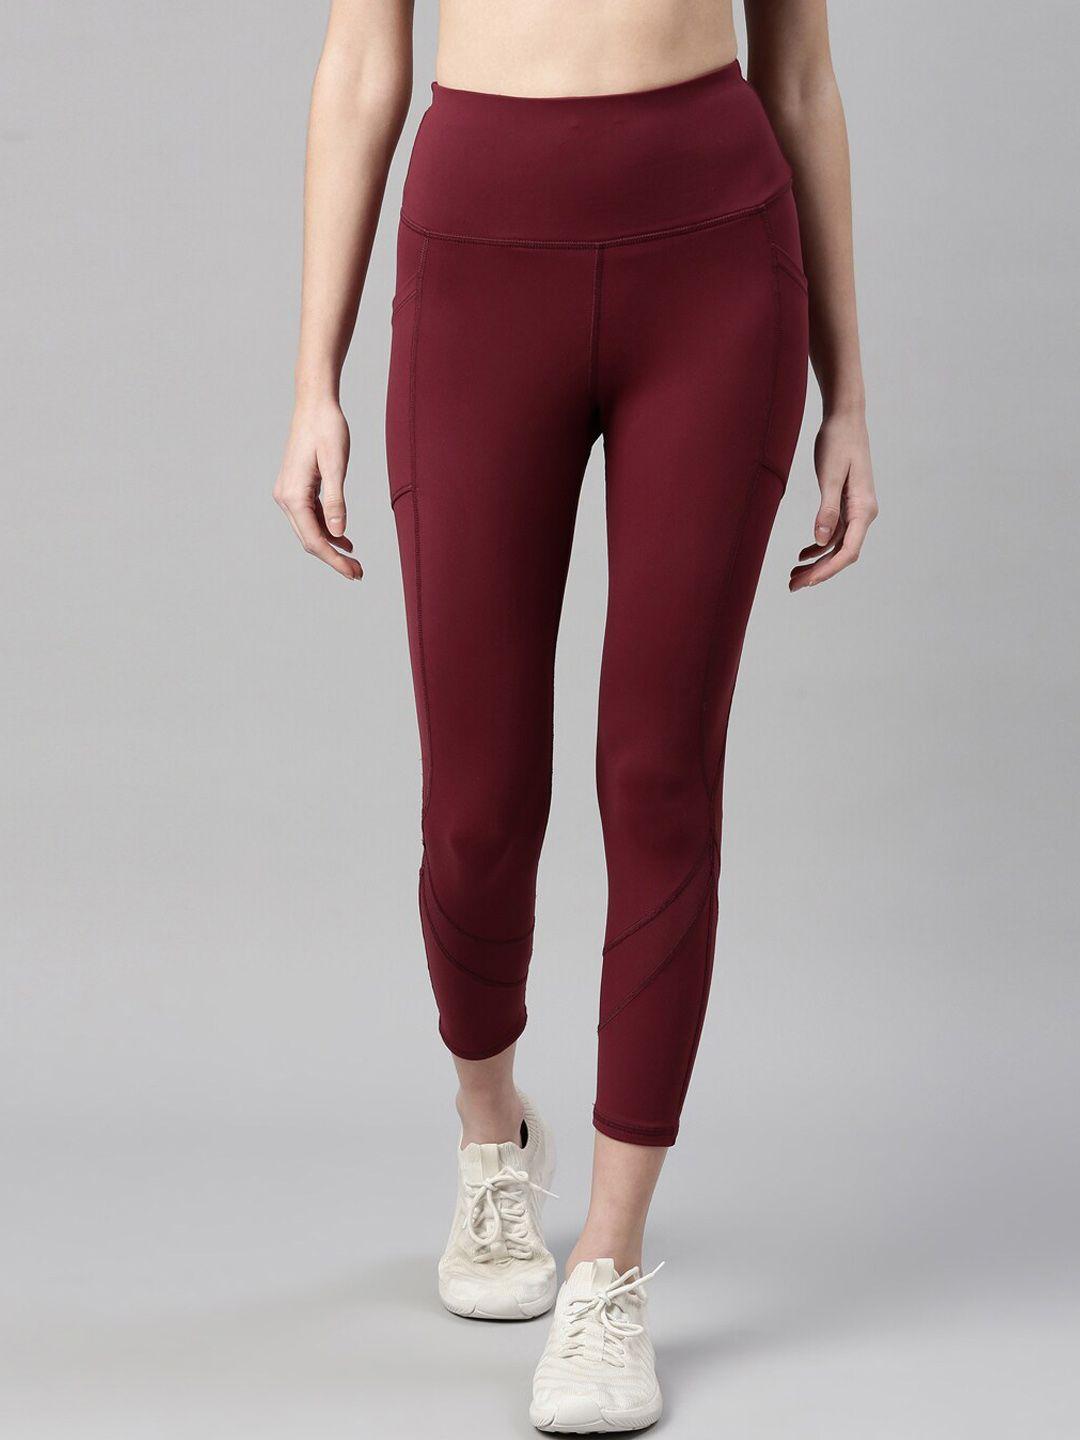 enamor women maroon dry fit antimicrobial high waist leggings